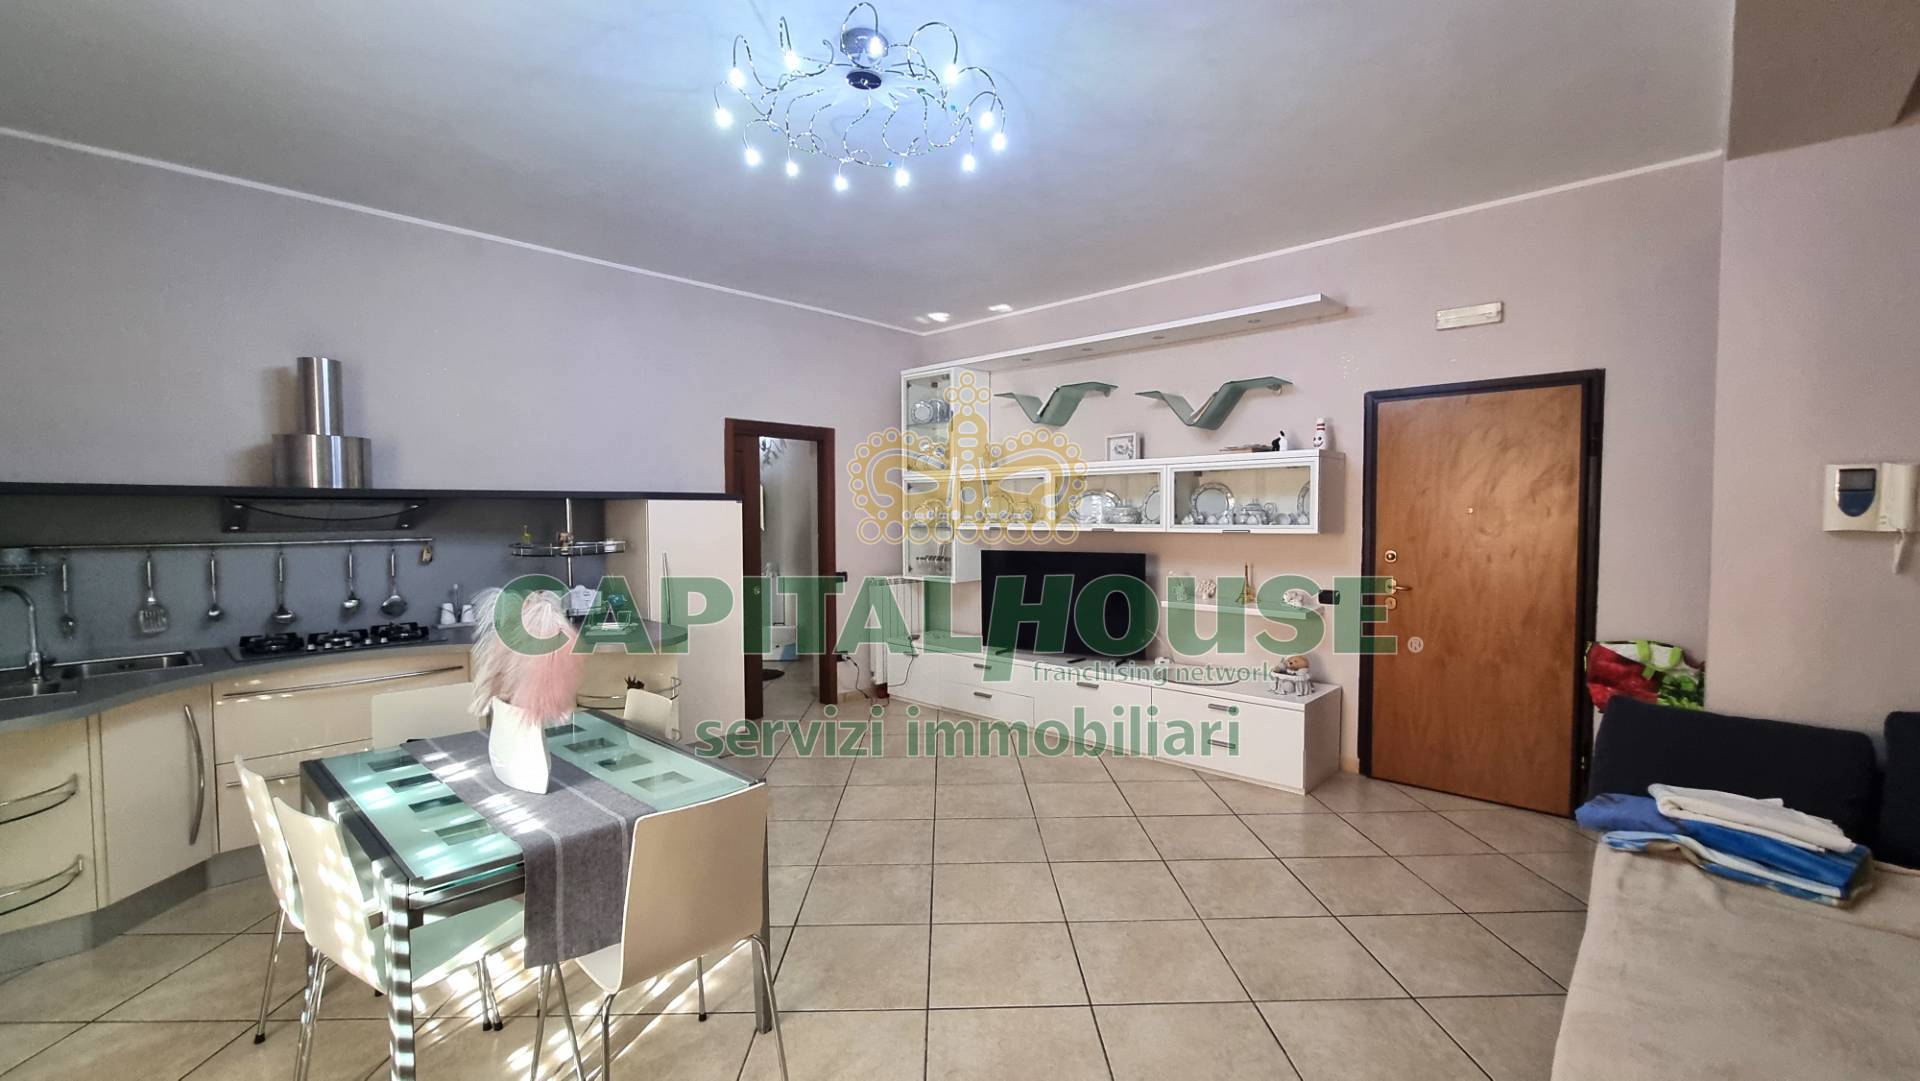 Appartamento in vendita a Portico di Caserta, 3 locali, prezzo € 115.000 | PortaleAgenzieImmobiliari.it